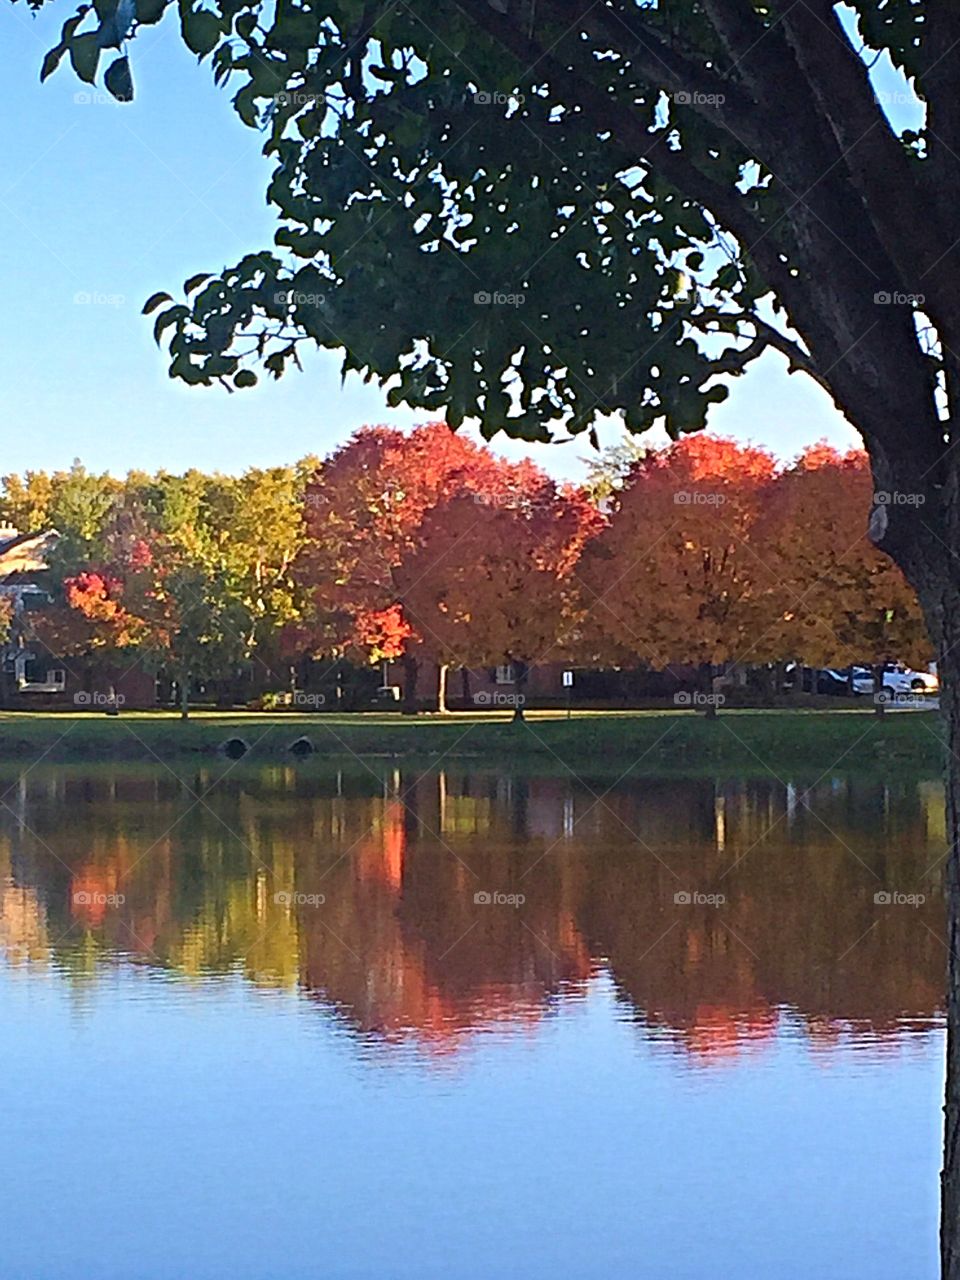 Fall's splendor 